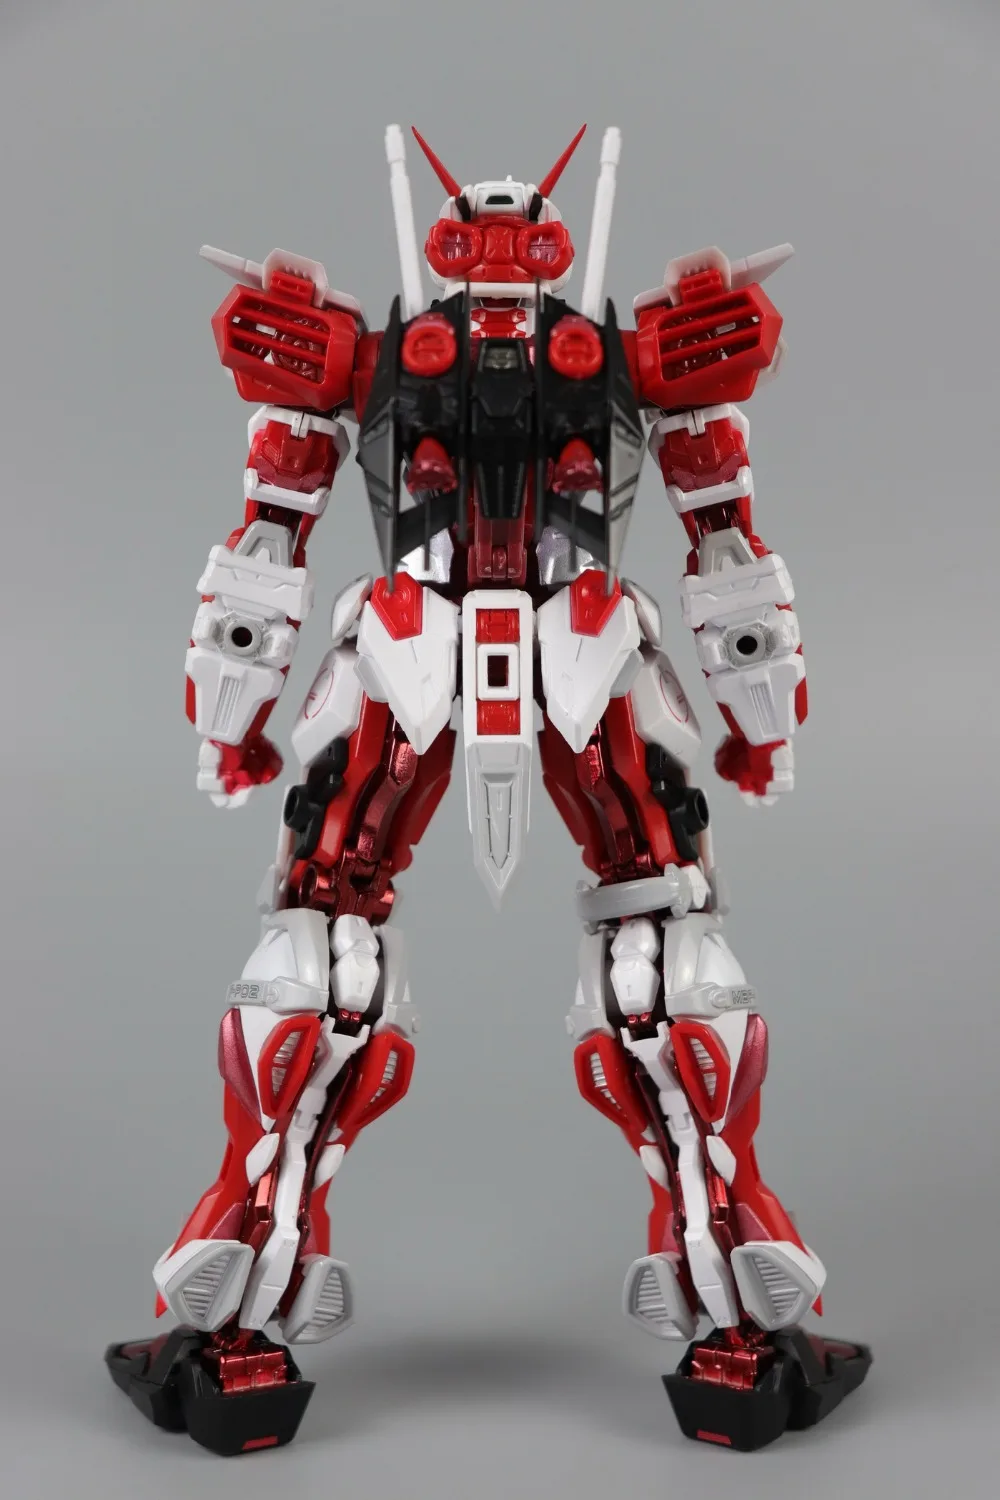 Комиксов клуб MC Metalgear медведи модели металлическая конструкция MB Gundam Astray красная рамка содержит полета блока фигурки